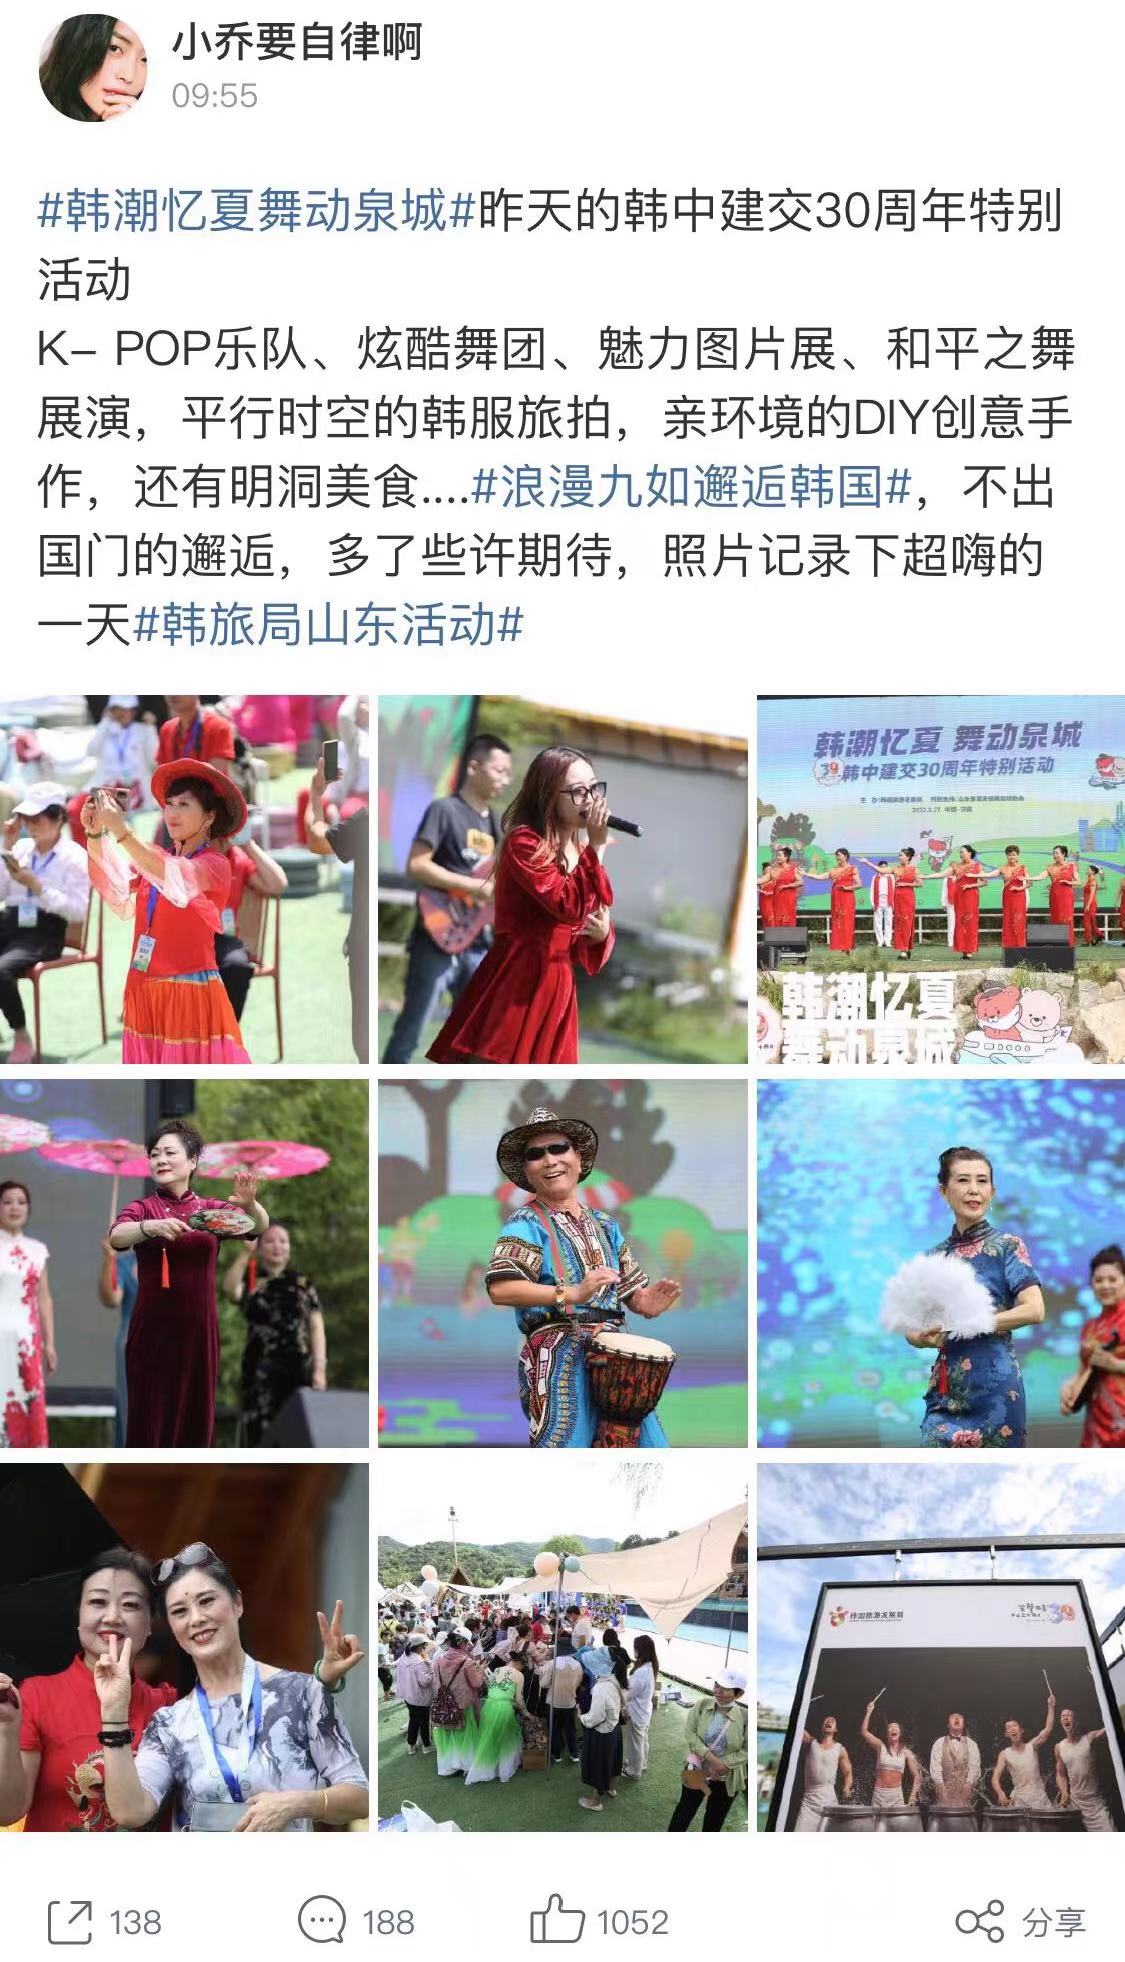 < 산동지역의 한중 수교 30주년 기념 행사 모습들 - 출처: 小乔要自律啊블로그 >